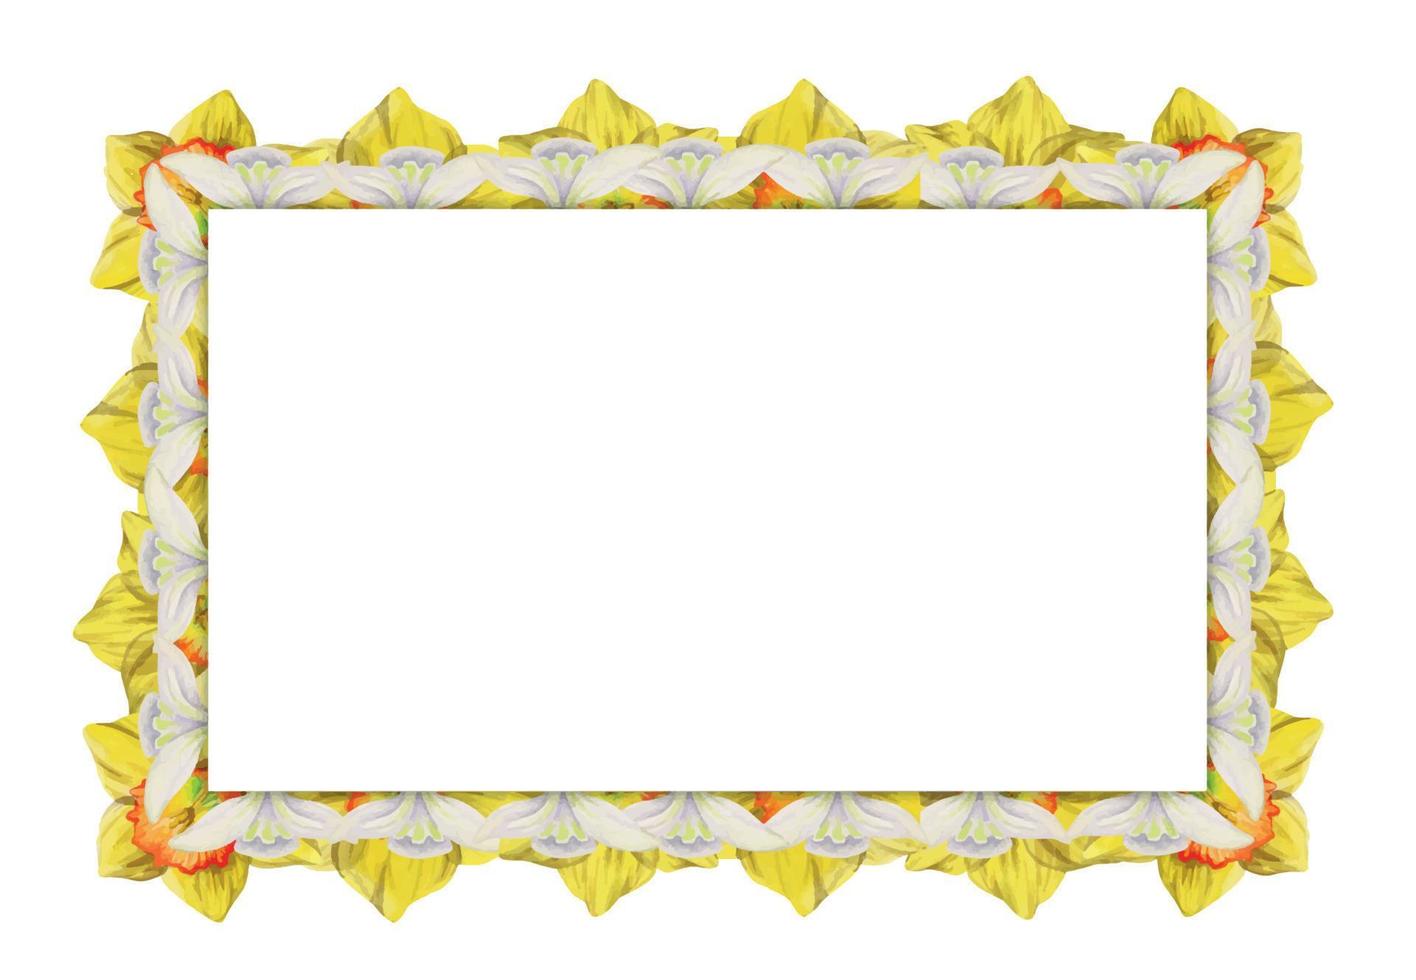 aquarell handgezeichneter quadratischer rahmen mit frühlingsblumen, narzissen, schneeglöckchen, zweigen, blättern. isoliert auf weißem Hintergrund. design für einladungen, hochzeit, grußkarten, tapeten, druck, textil vektor